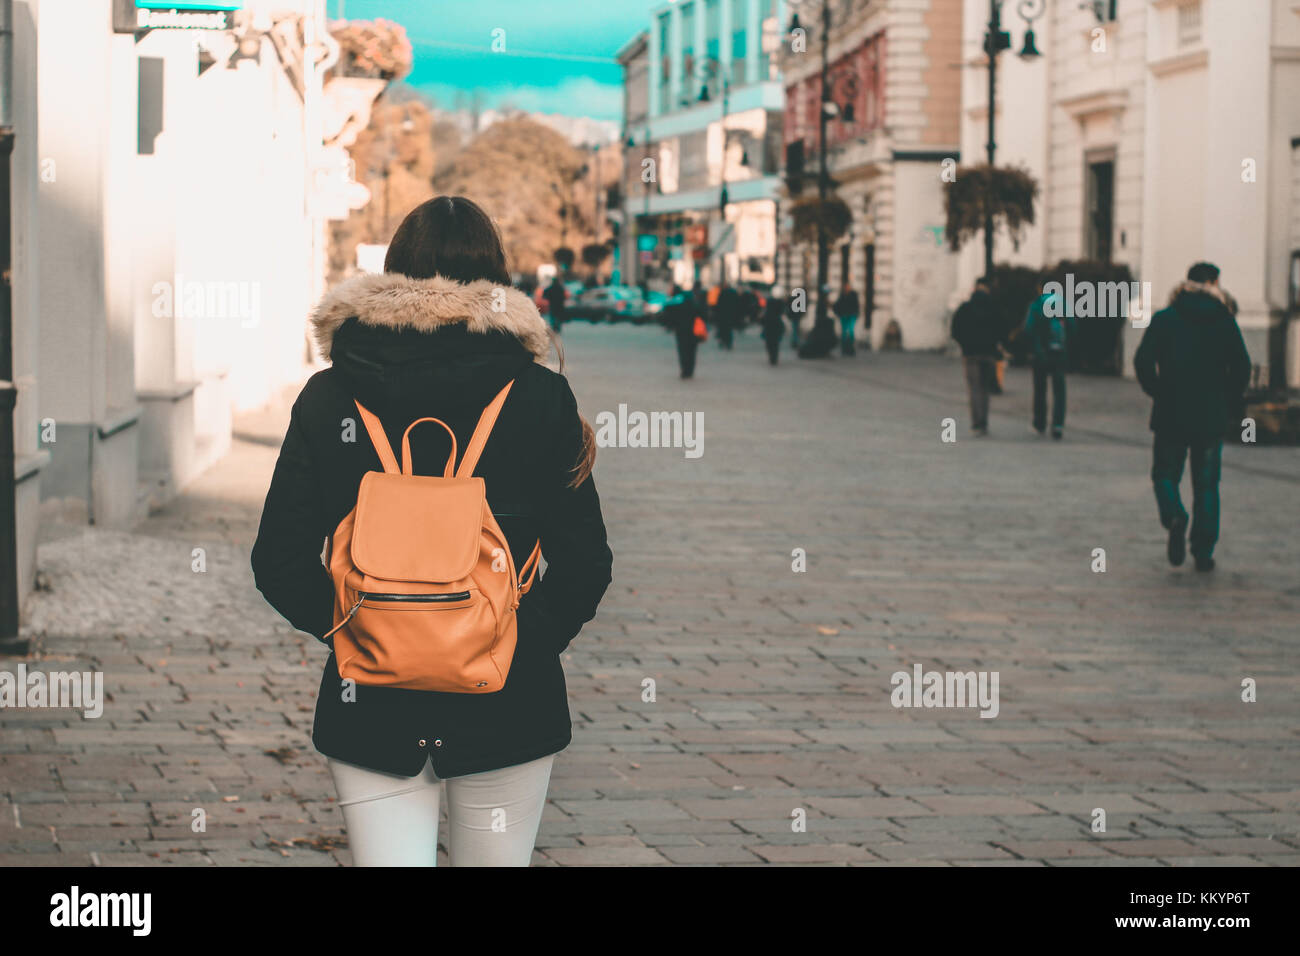 Jeune fille à la veste et sac à dos, marchant sur un trottoir du centre-ville road shopping pour Noël teal et orange Banque D'Images